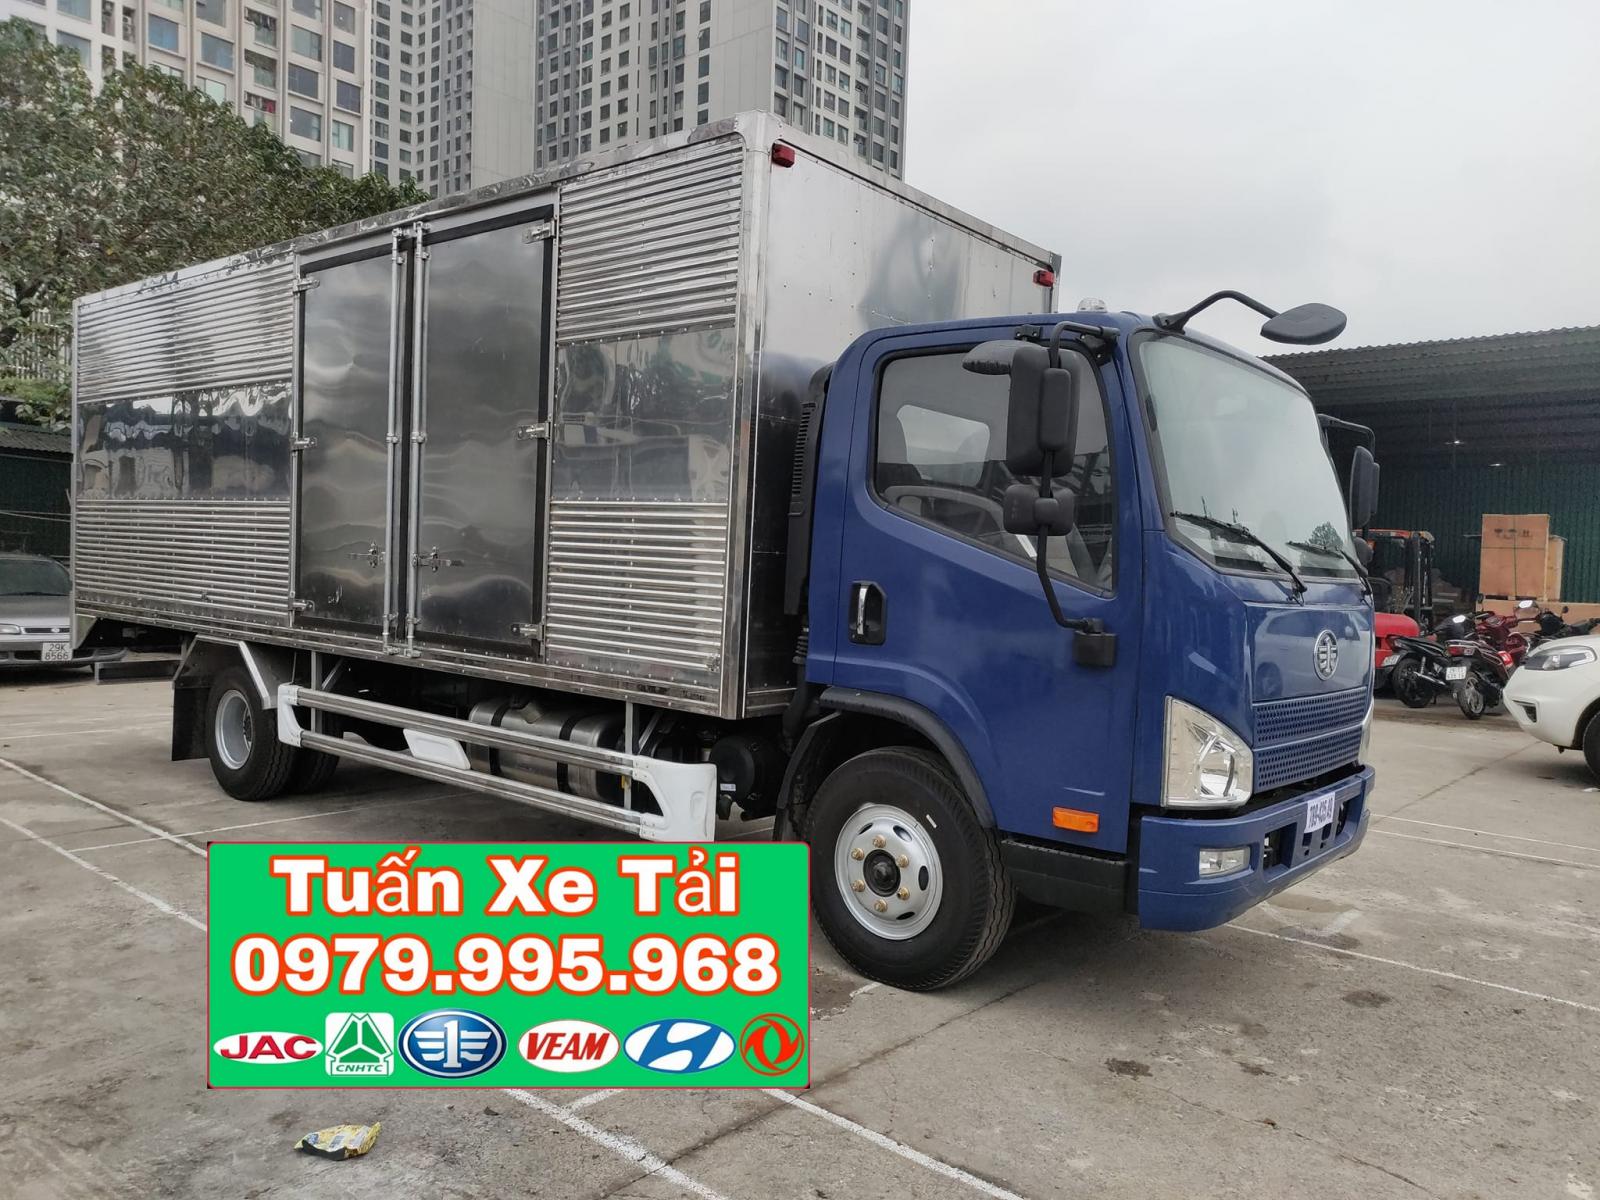 Bán xe tải Faw 8 tấn thùng kín 6m25, động cơ Weichai 140PS